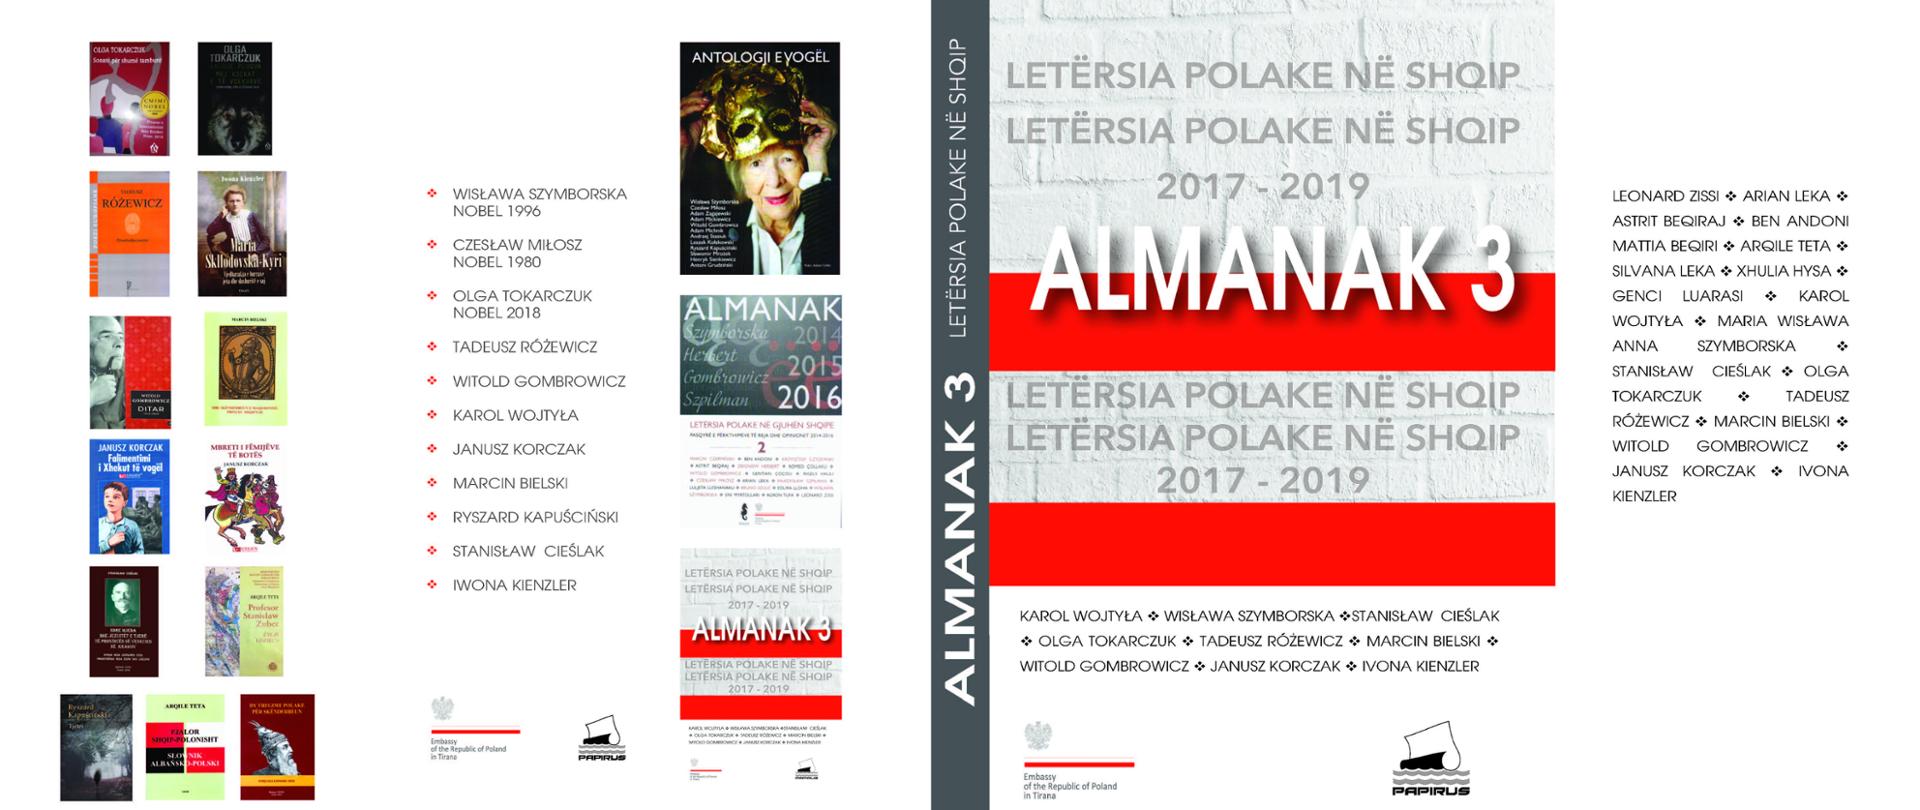 Najnowsza publikacja Ambasady RP w Tiranie obejmuje utwory literatury polskiej w języku albańskim z trzech ostatnich lat 2017-2019.